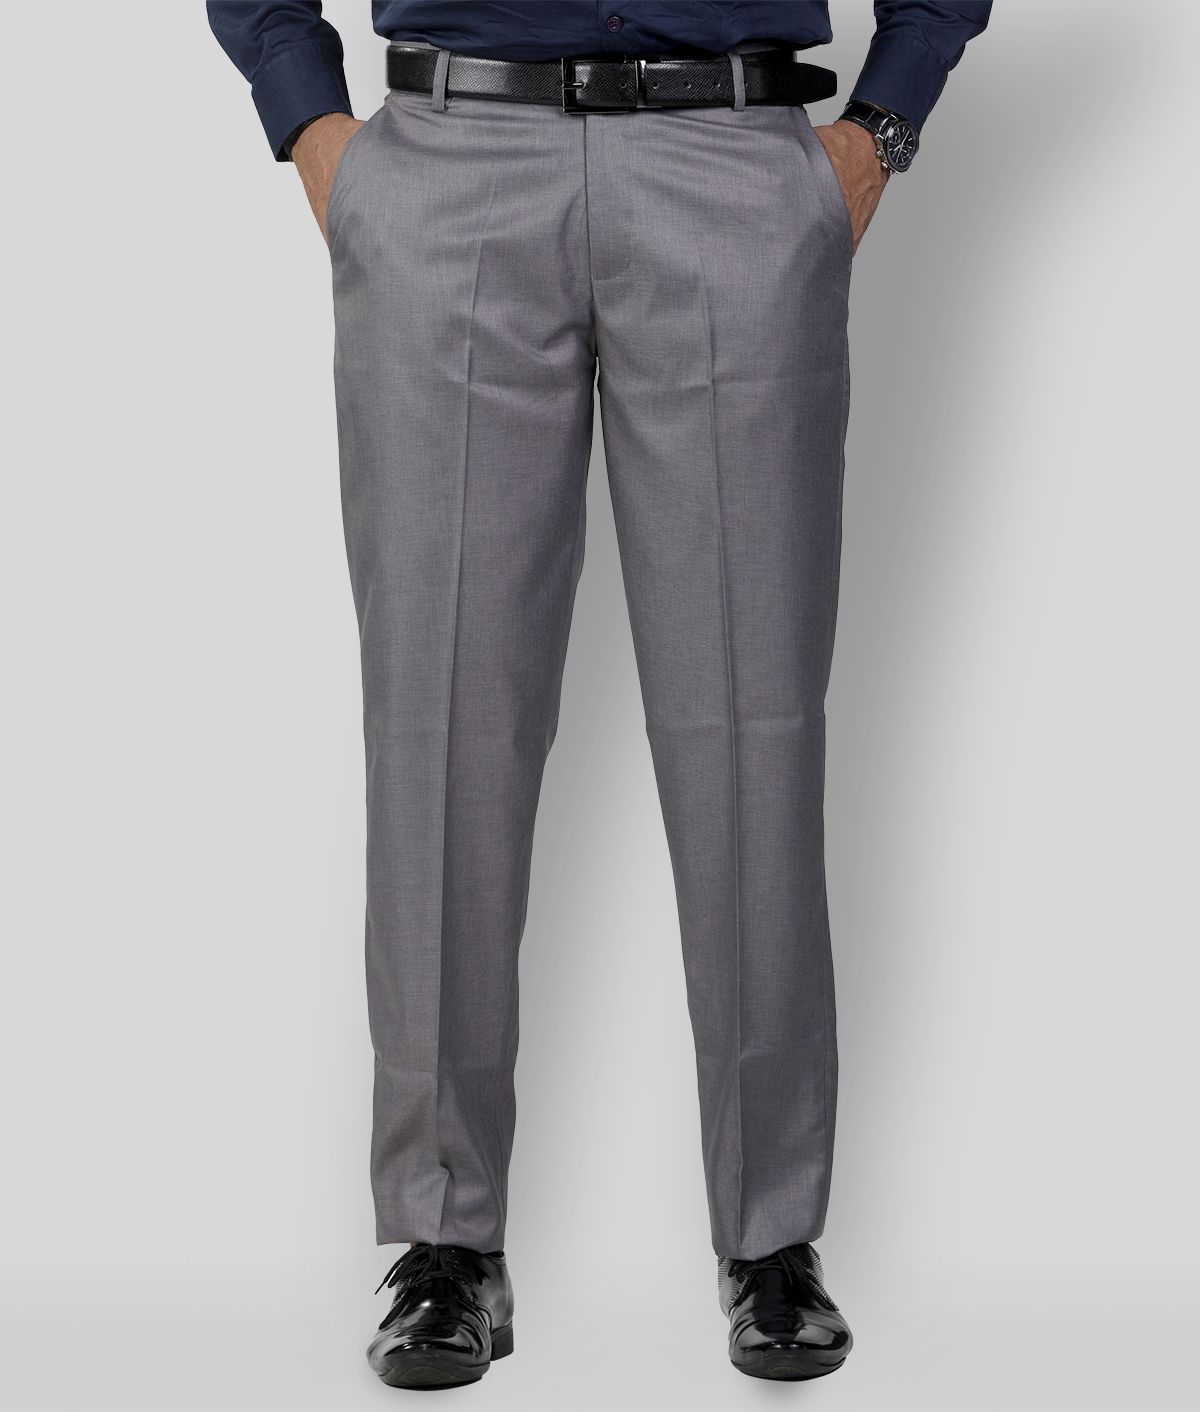     			SAM & JACK - Grey Cotton Blend Regular Fit Men's Formal Pants (Pack of 1)